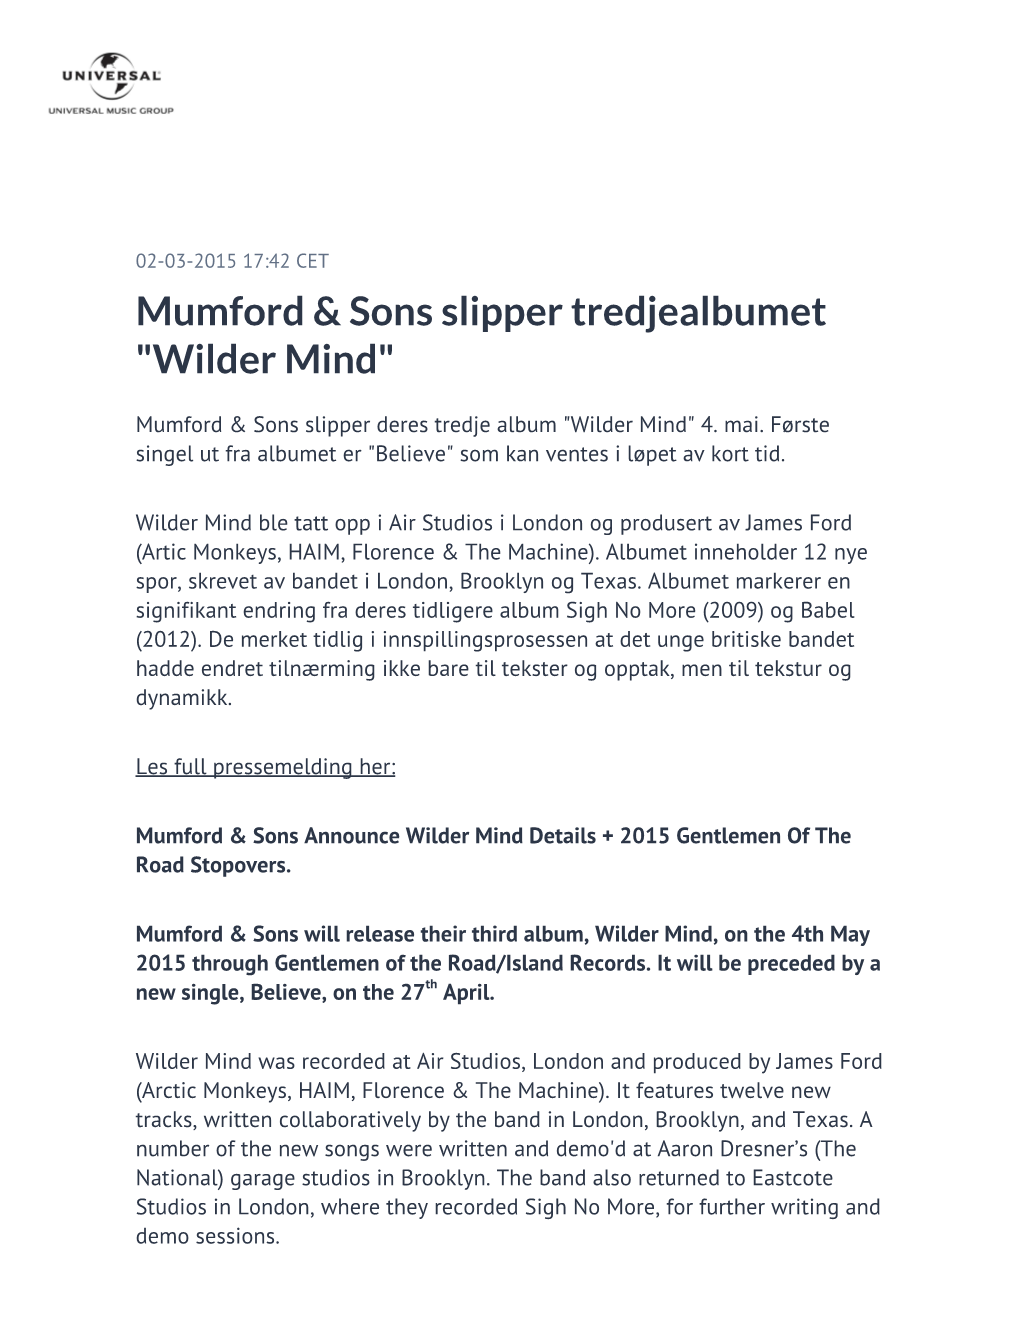 Mumford & Sons Slipper Tredjealbumet "Wilder Mind"